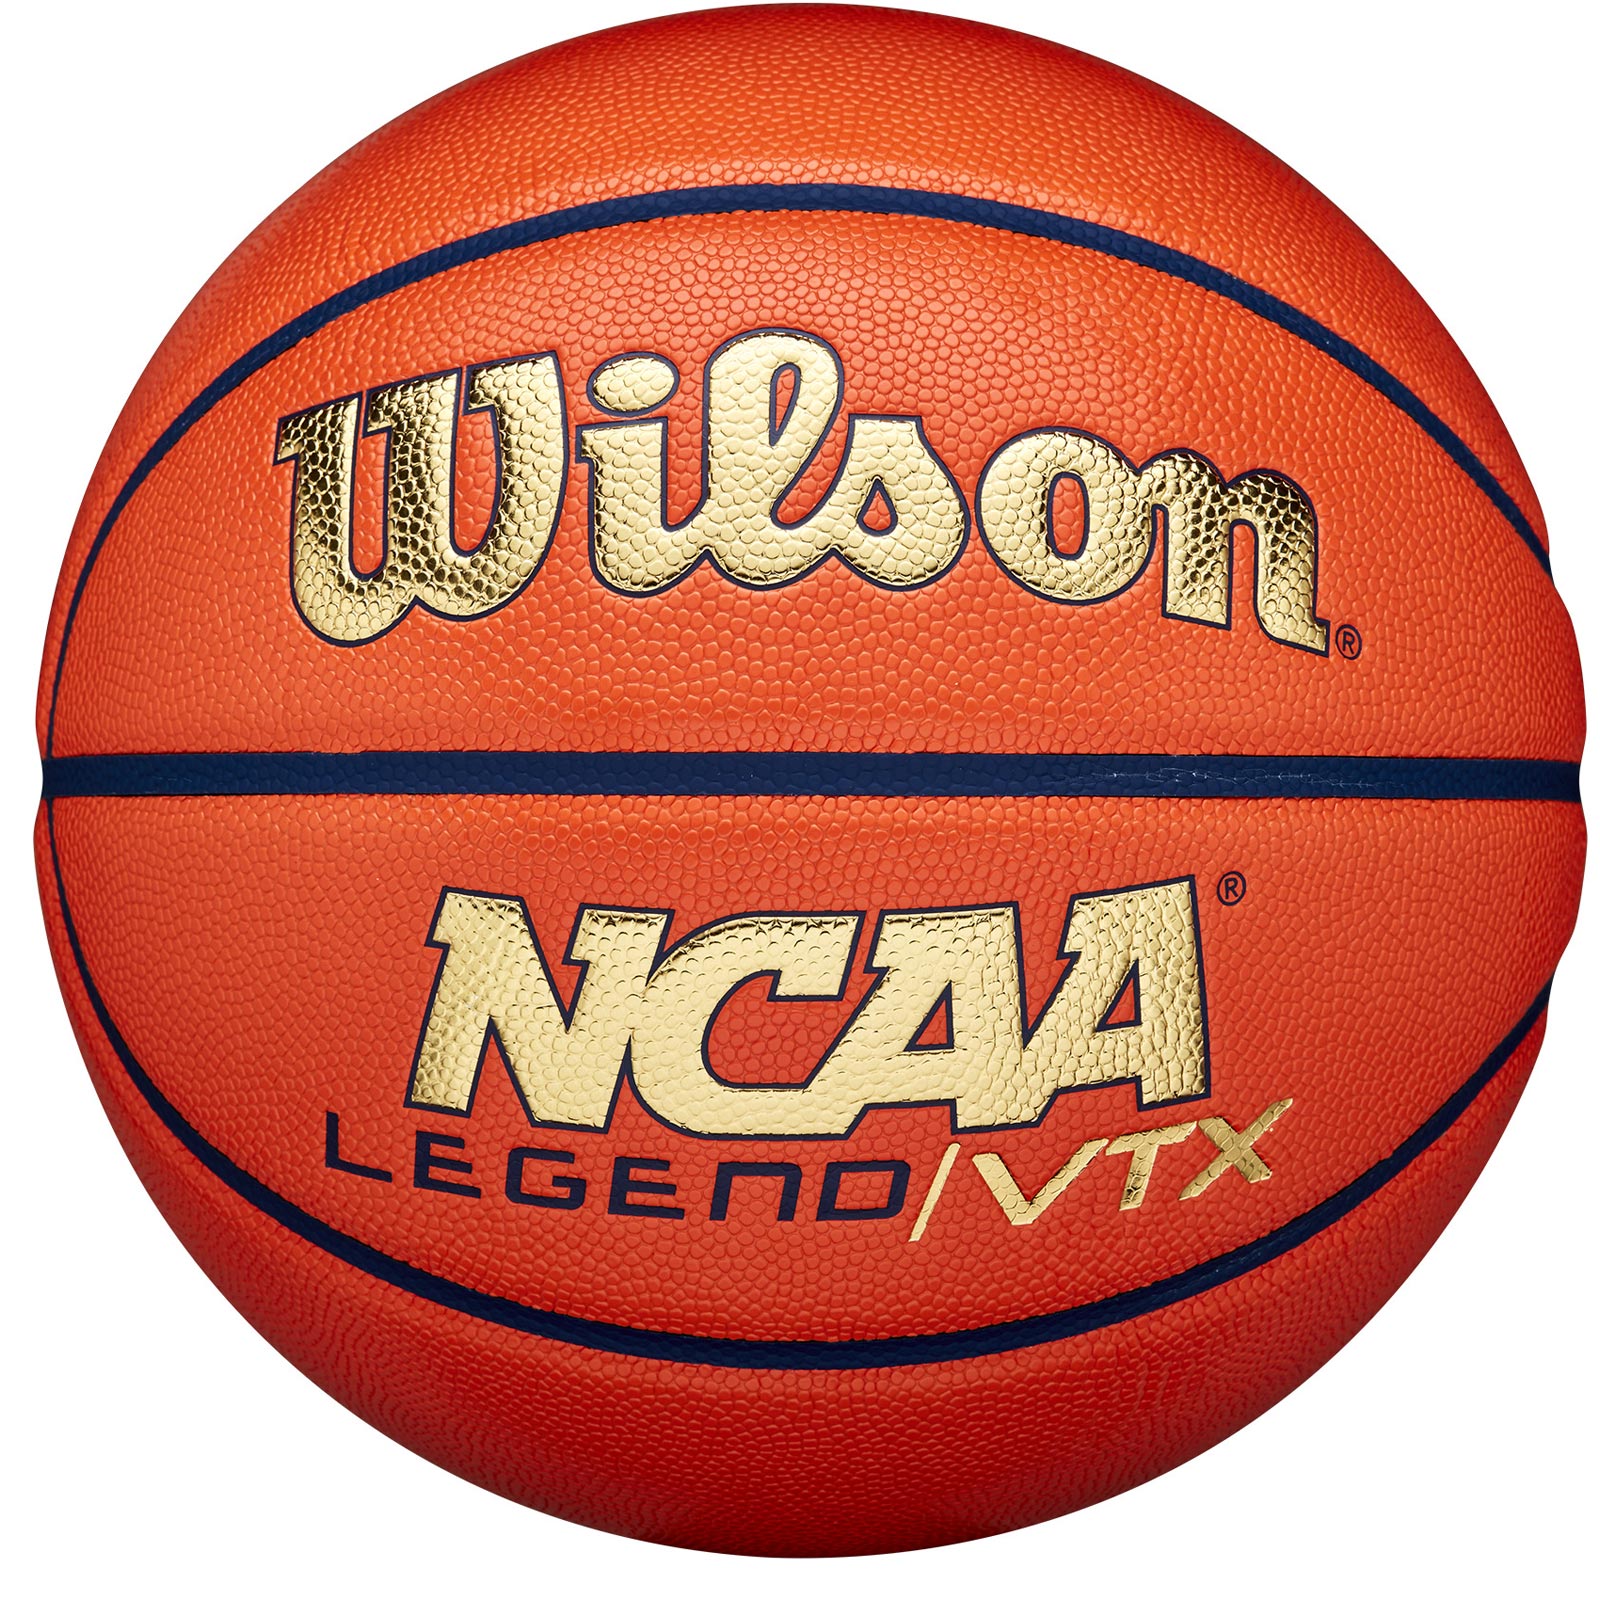 WILSON NCAA LEGEND VTX BASKETBALL - SIZE 7